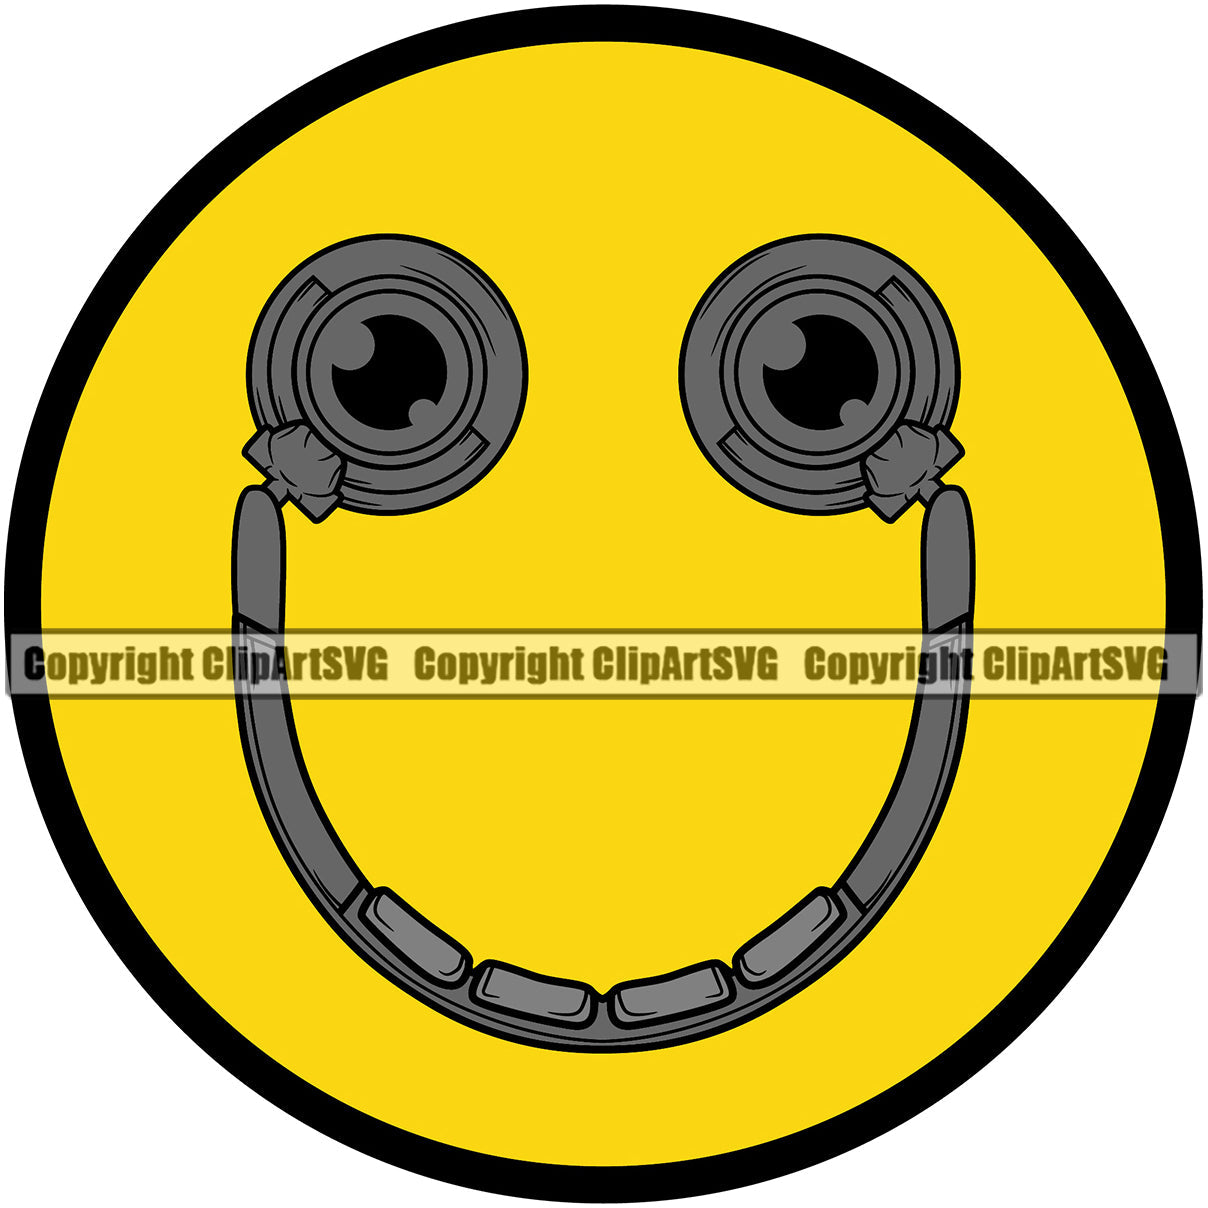 smiley face copyright